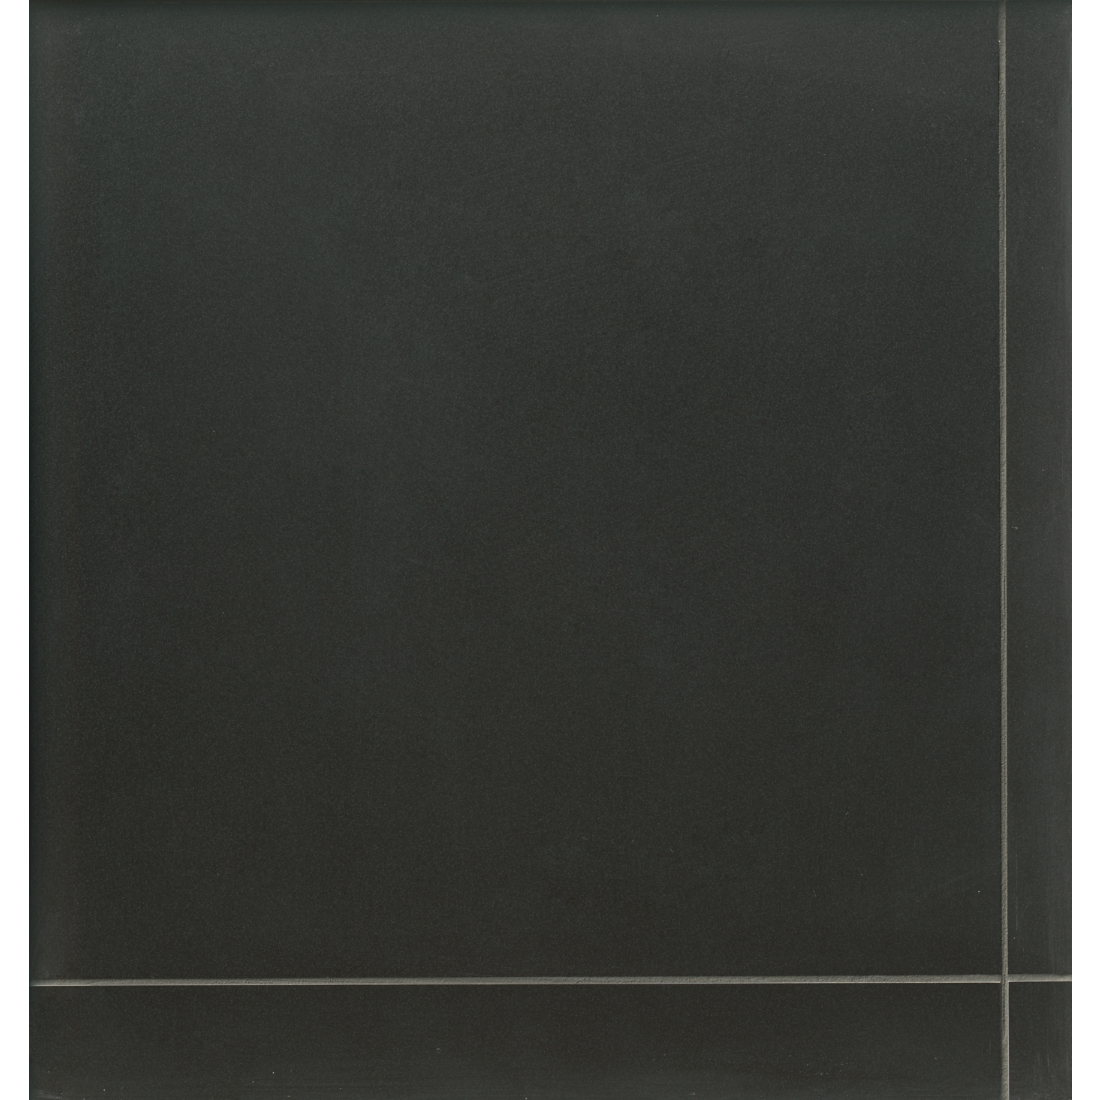 Colormatte Black 44x44cm